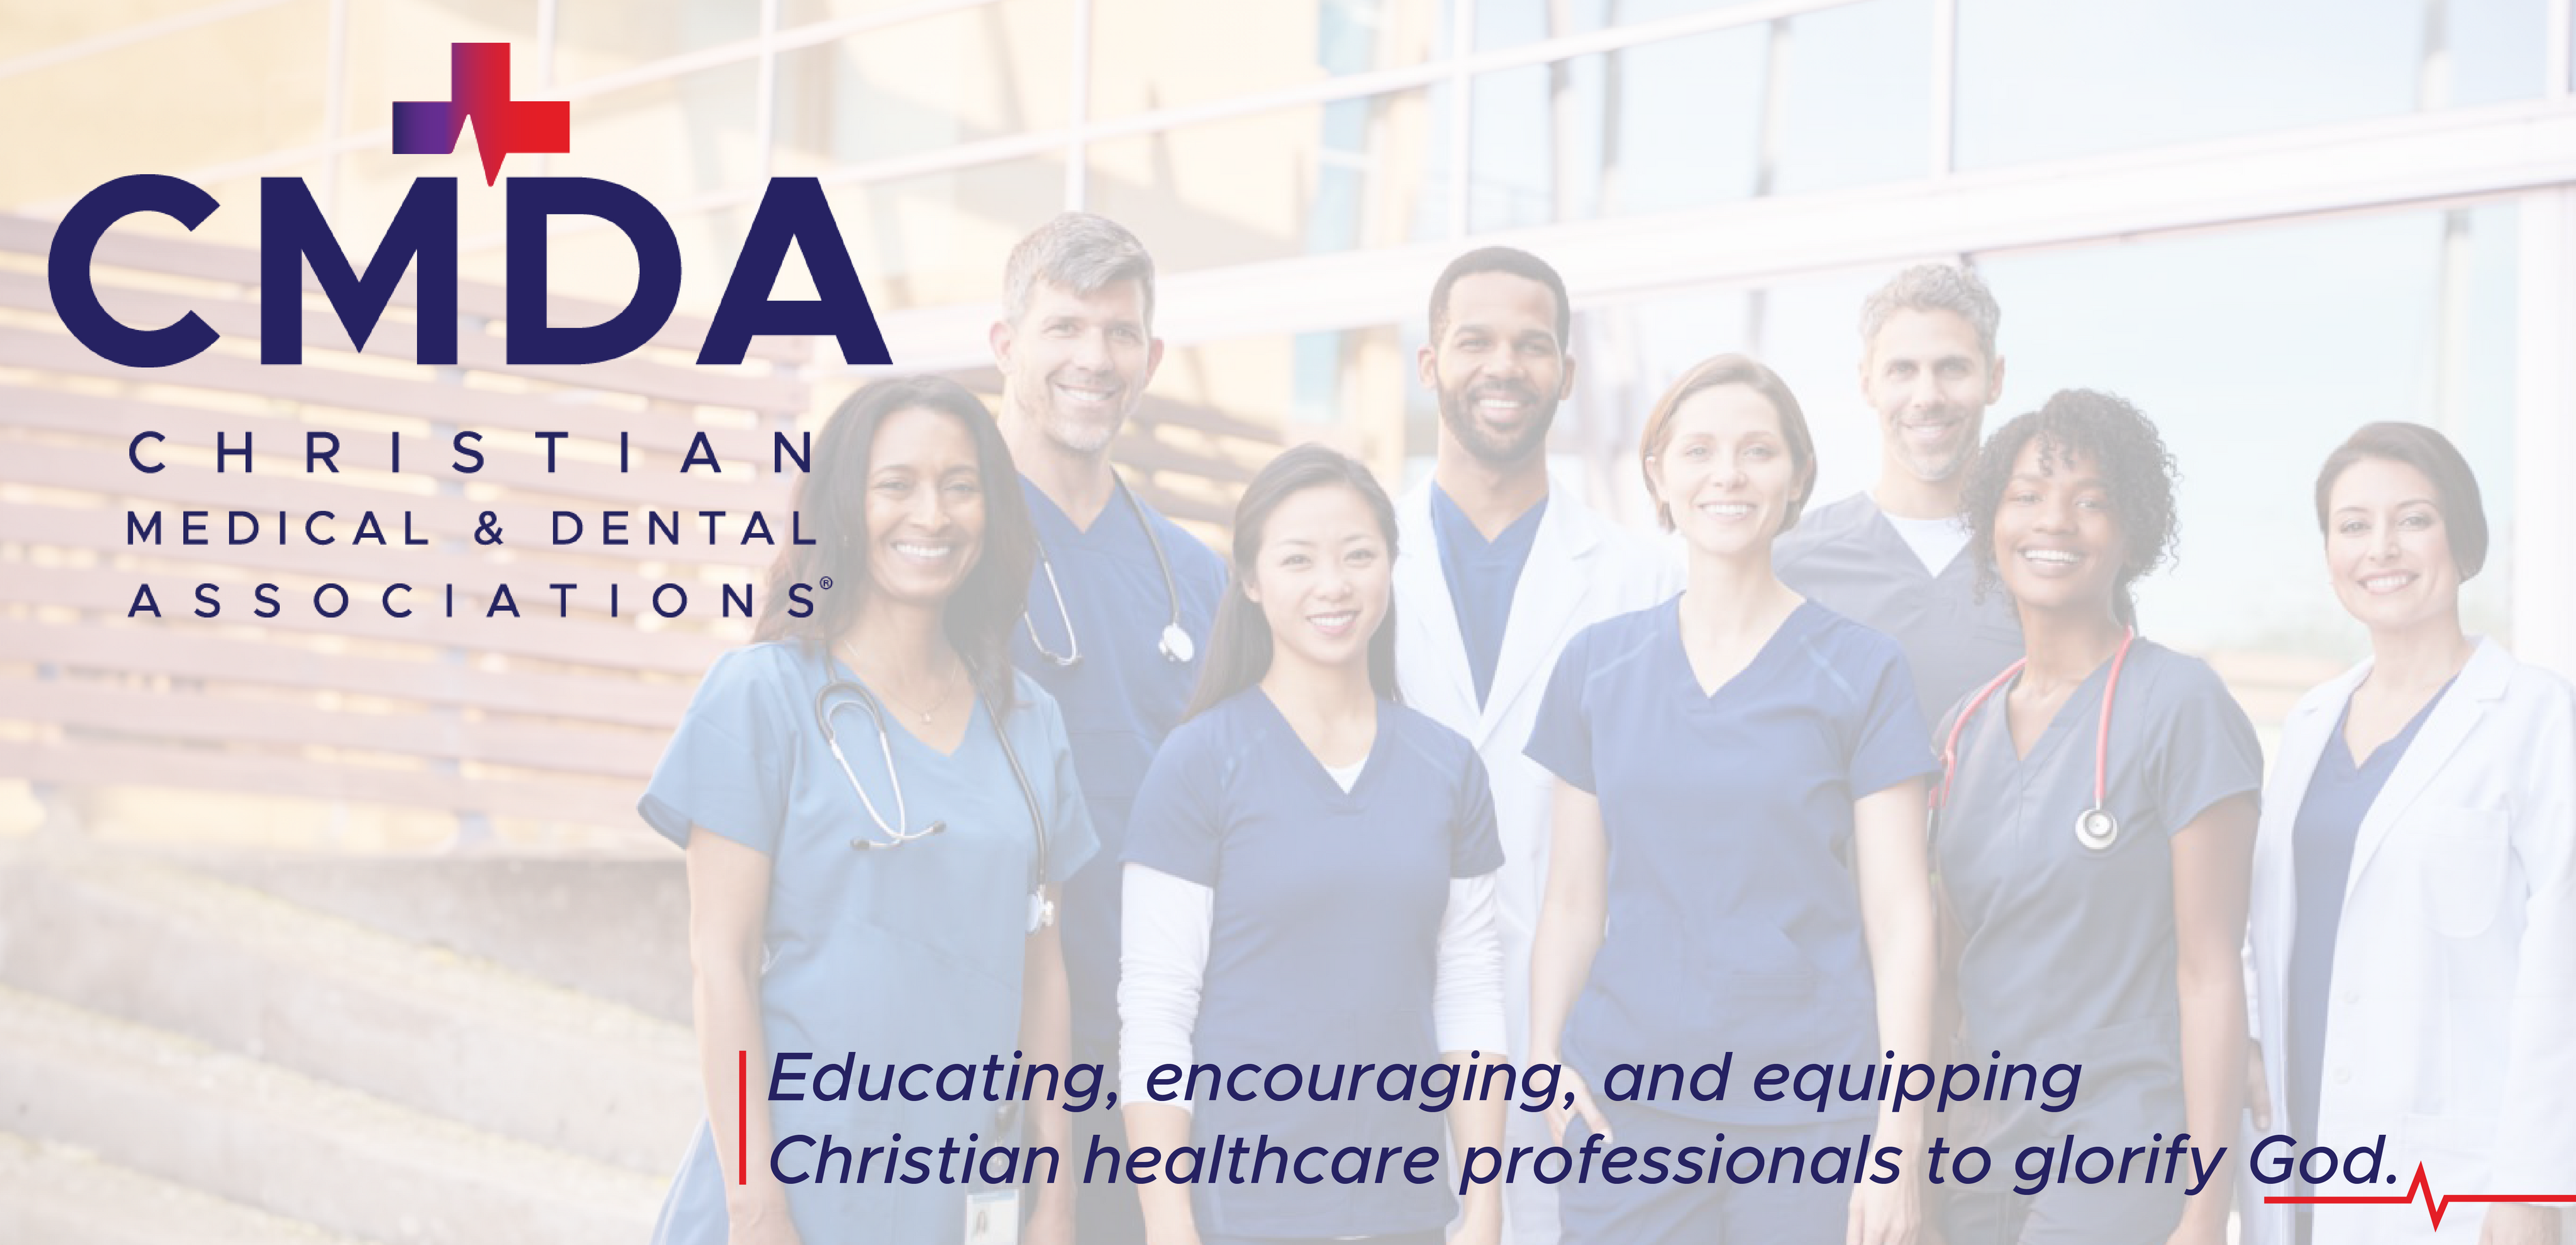 Christian Medial & Dental Association